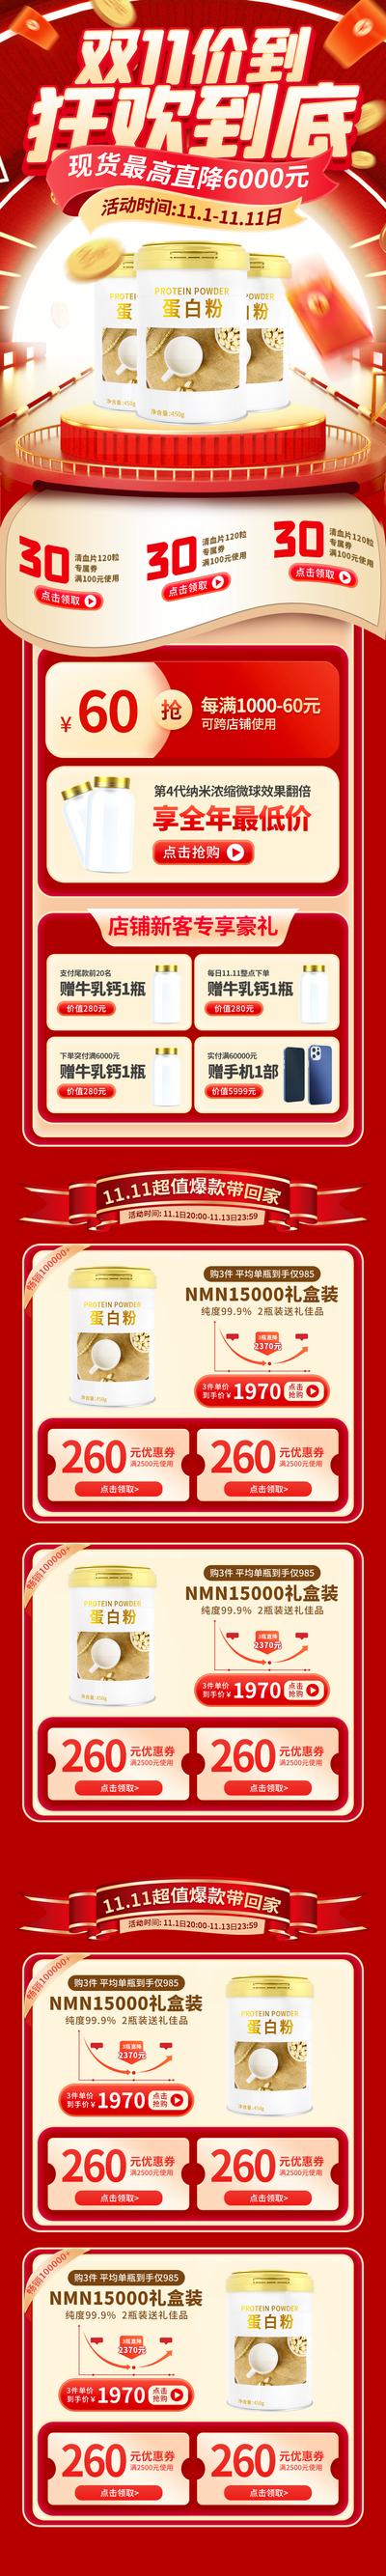 南门网 广告 海报 电商 双十一 双11 长图 主画面 促销 专题 奶粉